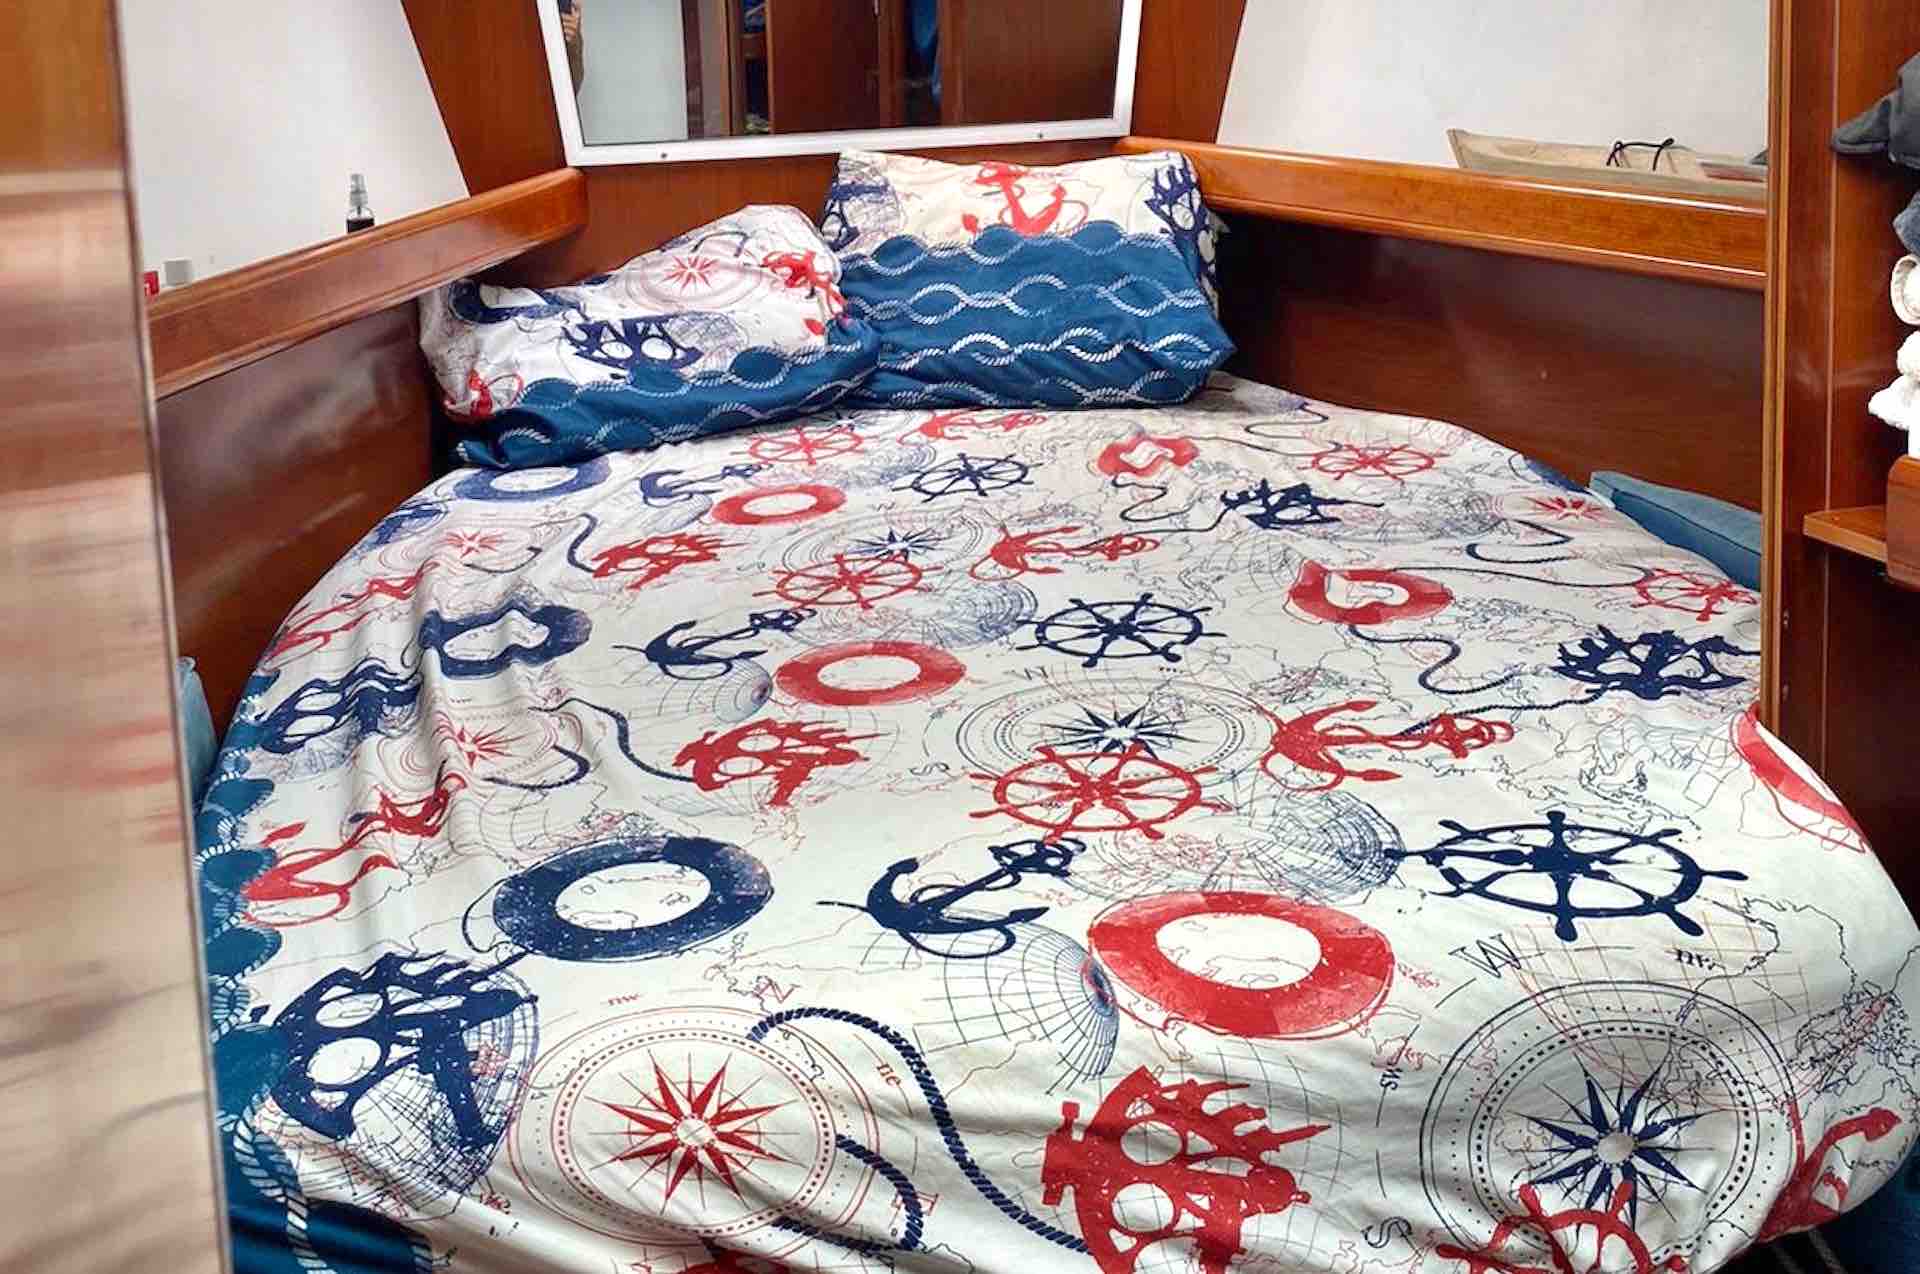 San Blas sailing charter sailboat bedroom